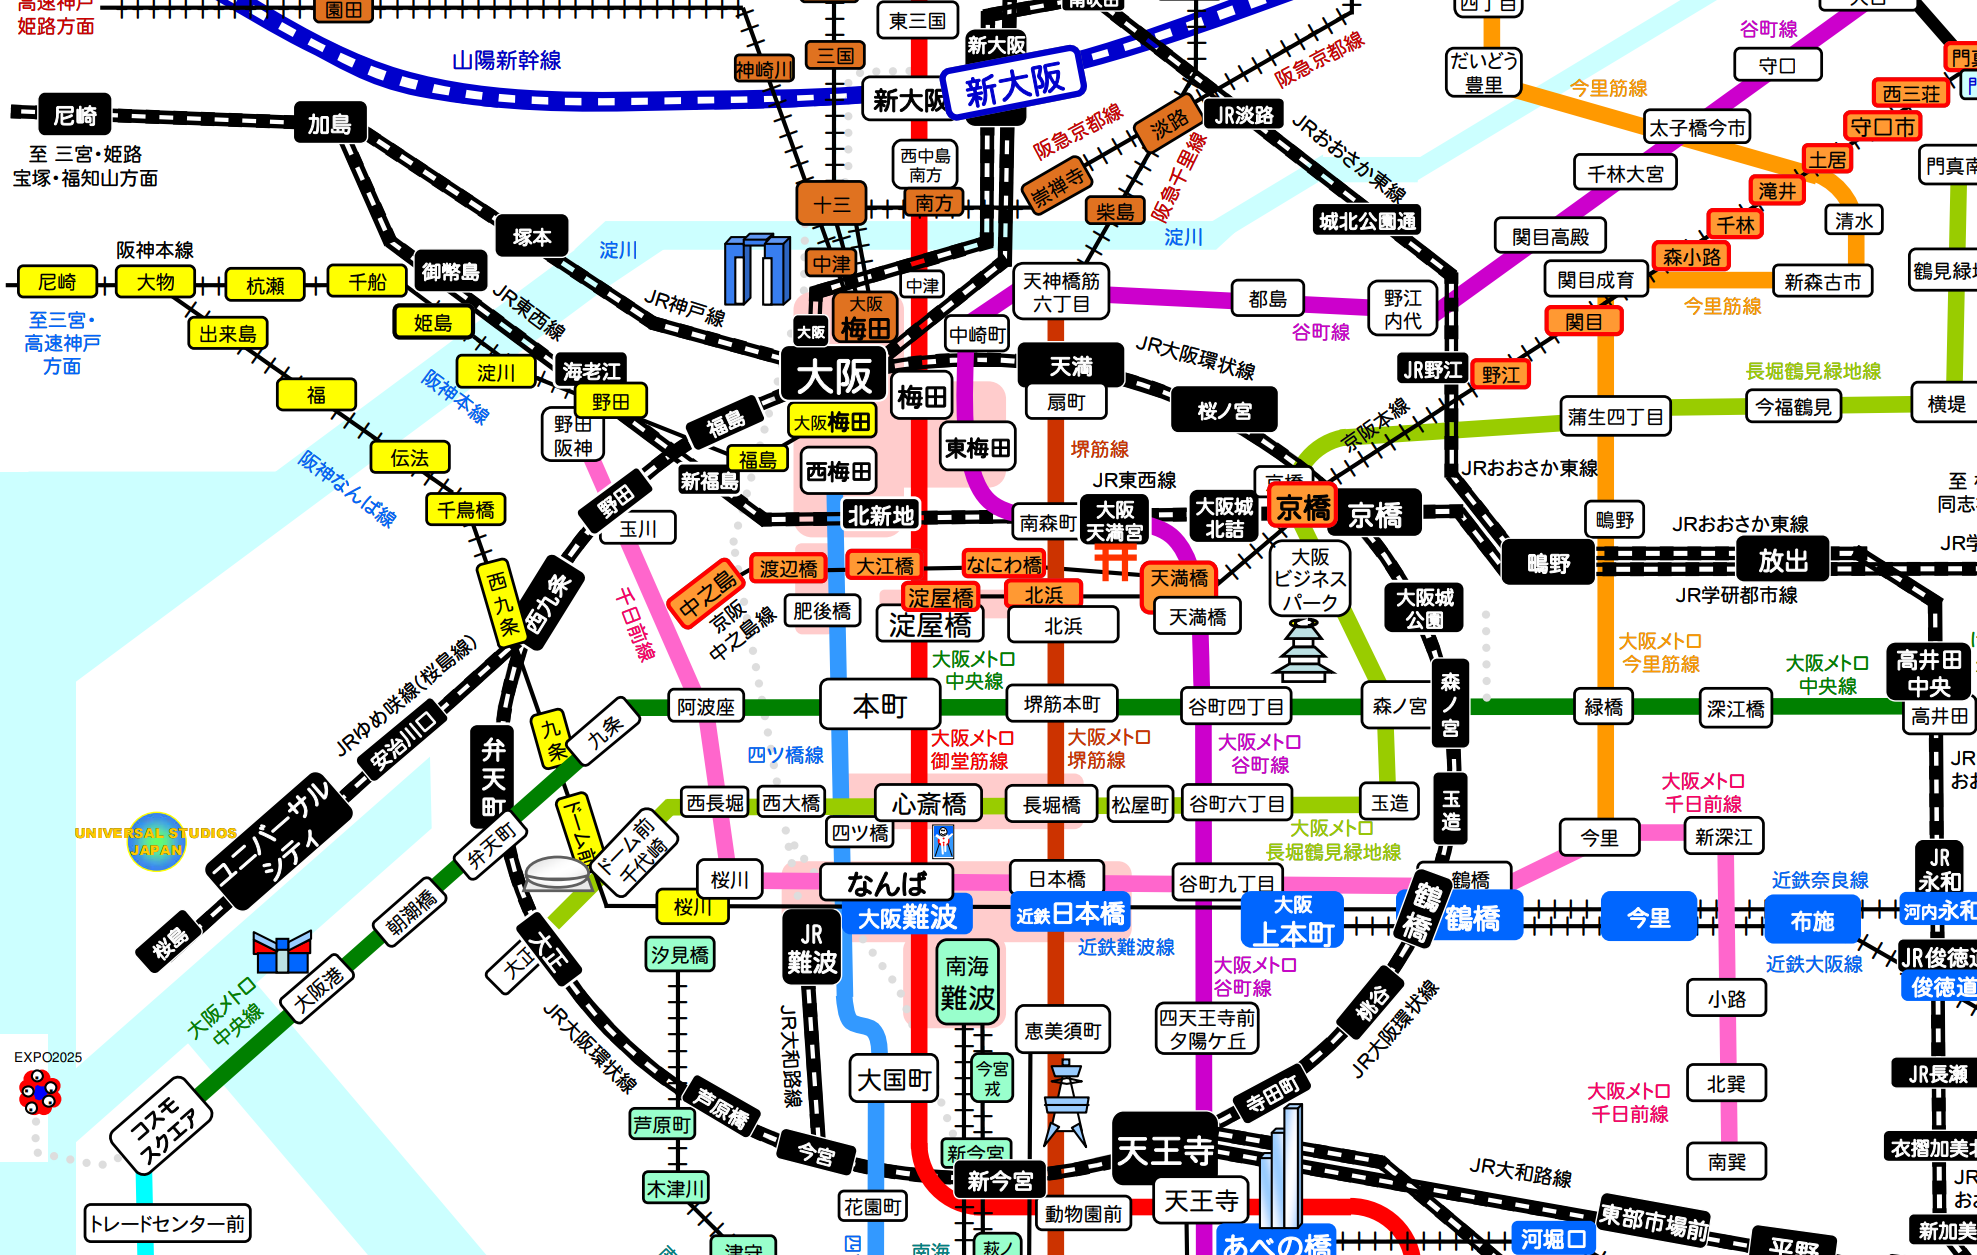 大阪市内・電車路線図 2023】地下鉄・JR・私鉄の位置関係を考慮した ...